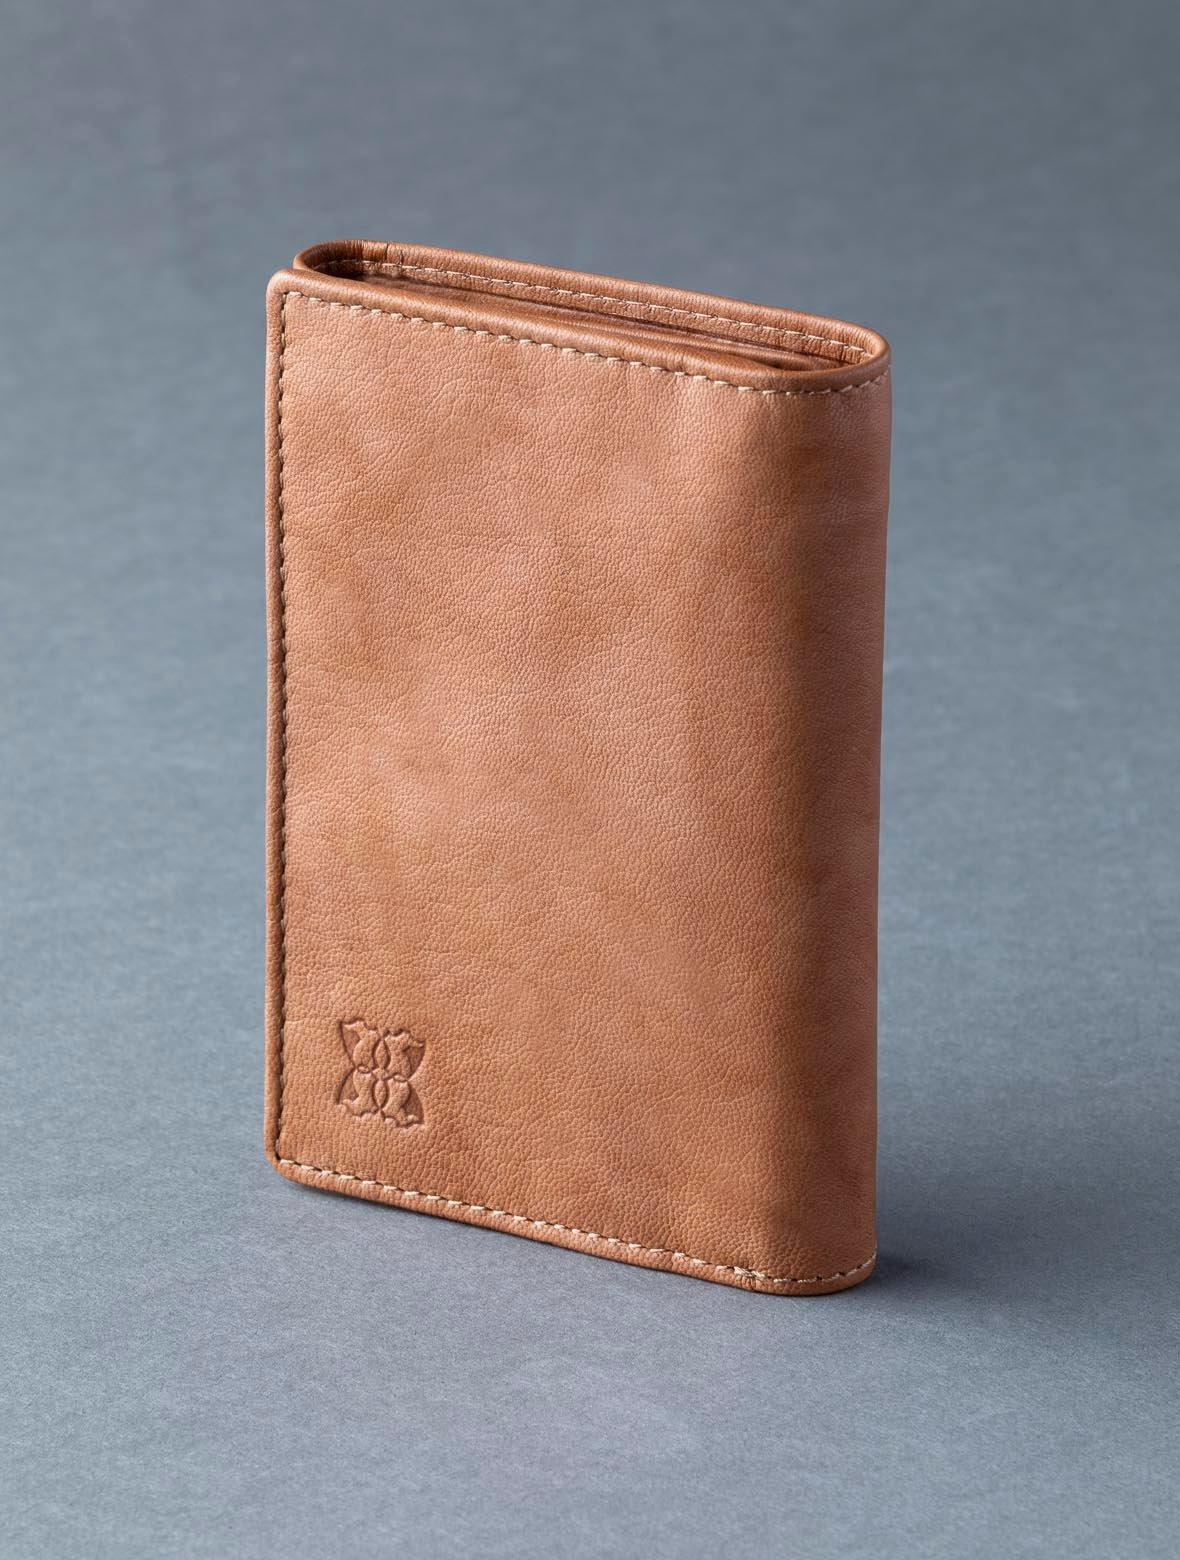 цена Кожаный кошелек в три сложения 'Bowston' Lakeland Leather, коричневый